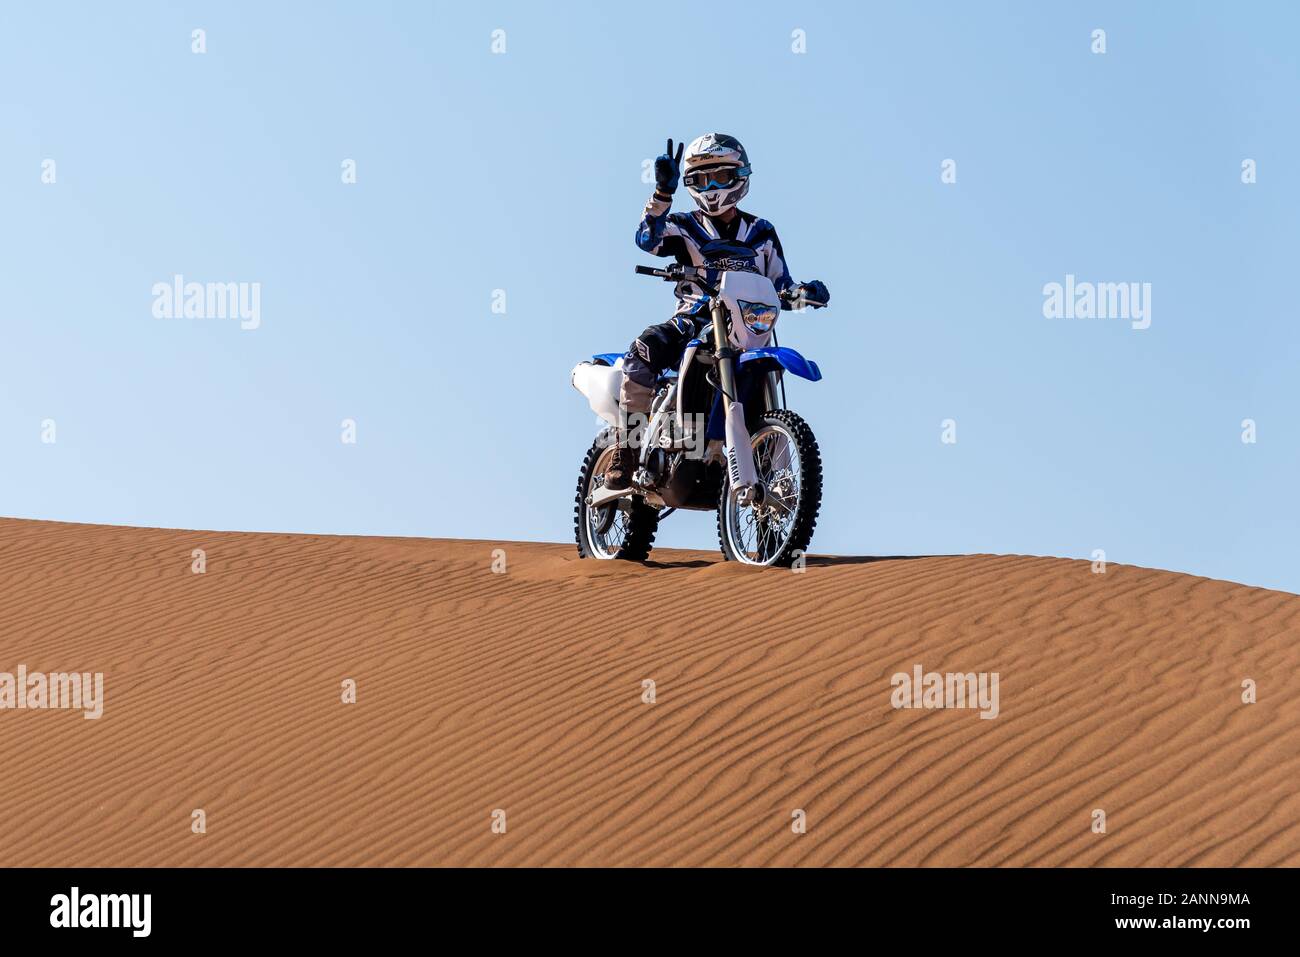 Zahedan, Iran baluchestan/-11/23/2018 Yamaha WR 450 Motorrad in der Wüste Lut Stockfoto